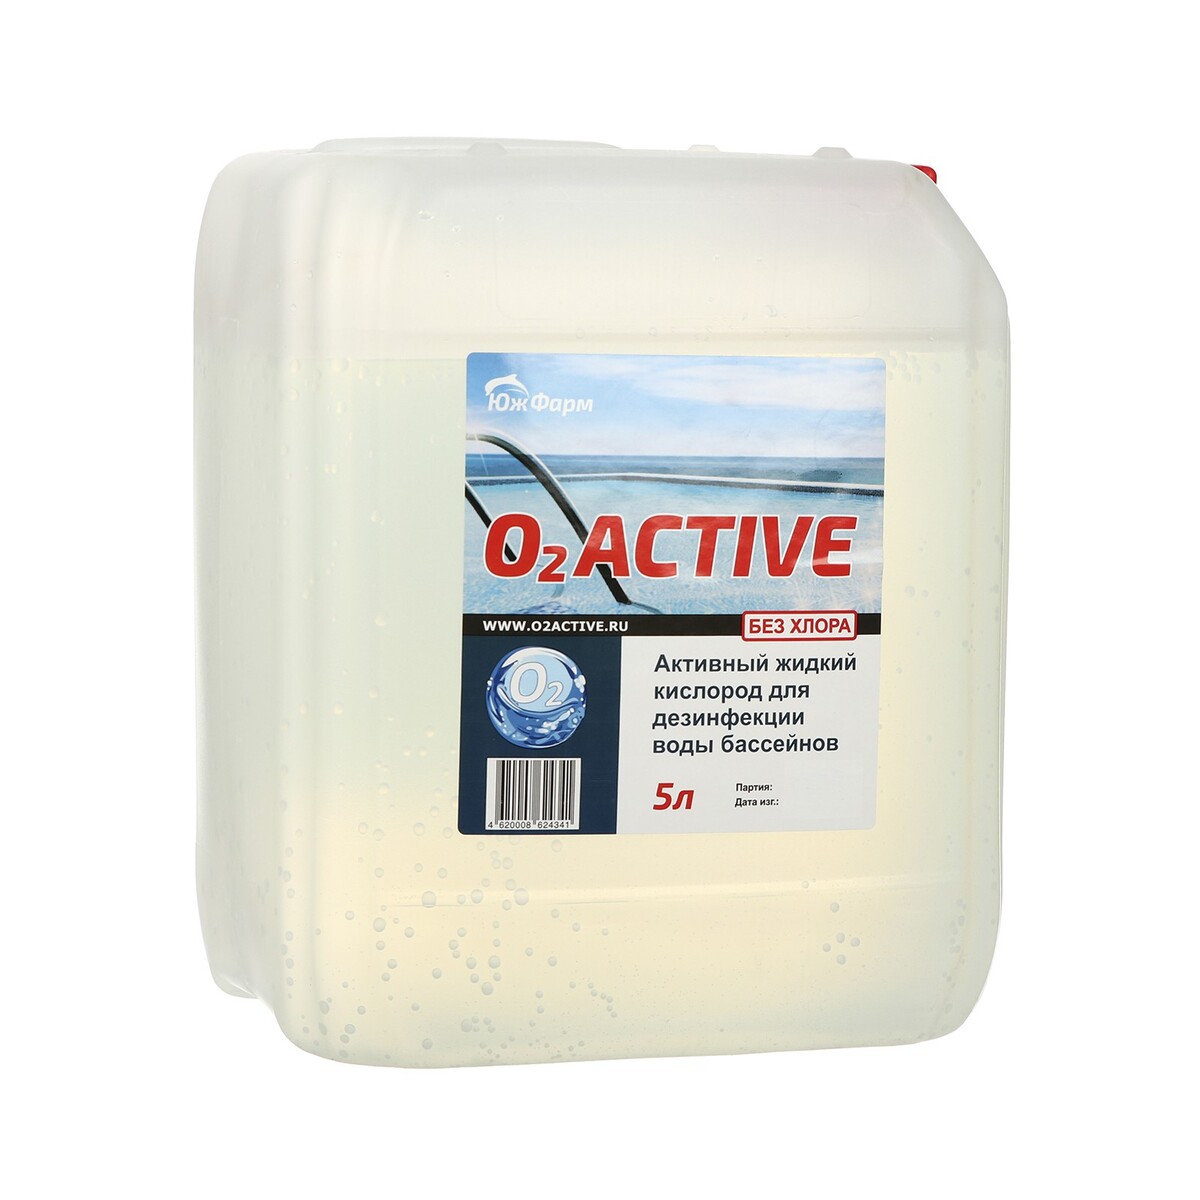 О2 active, средство для дезинфекции воды бассейнов, 5 л No brand